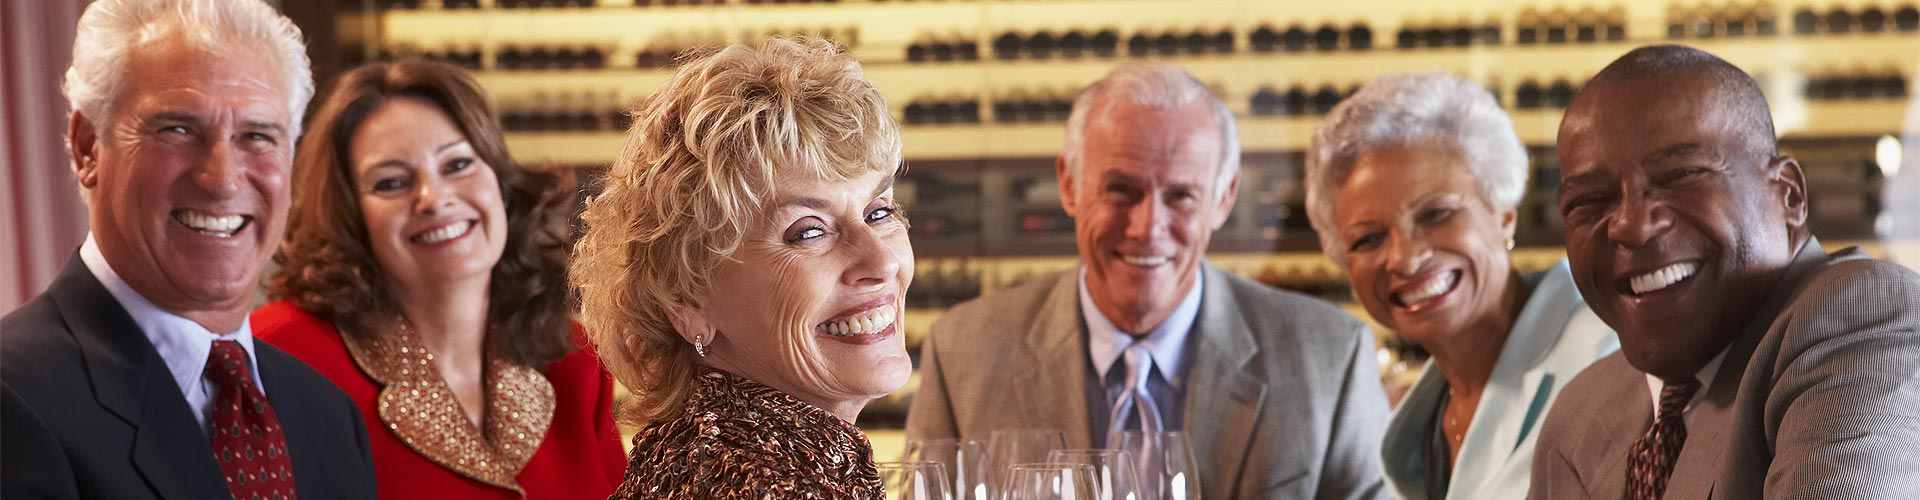 Restaurantes para jubilaciones 2019 en Villalcázar de Sirga